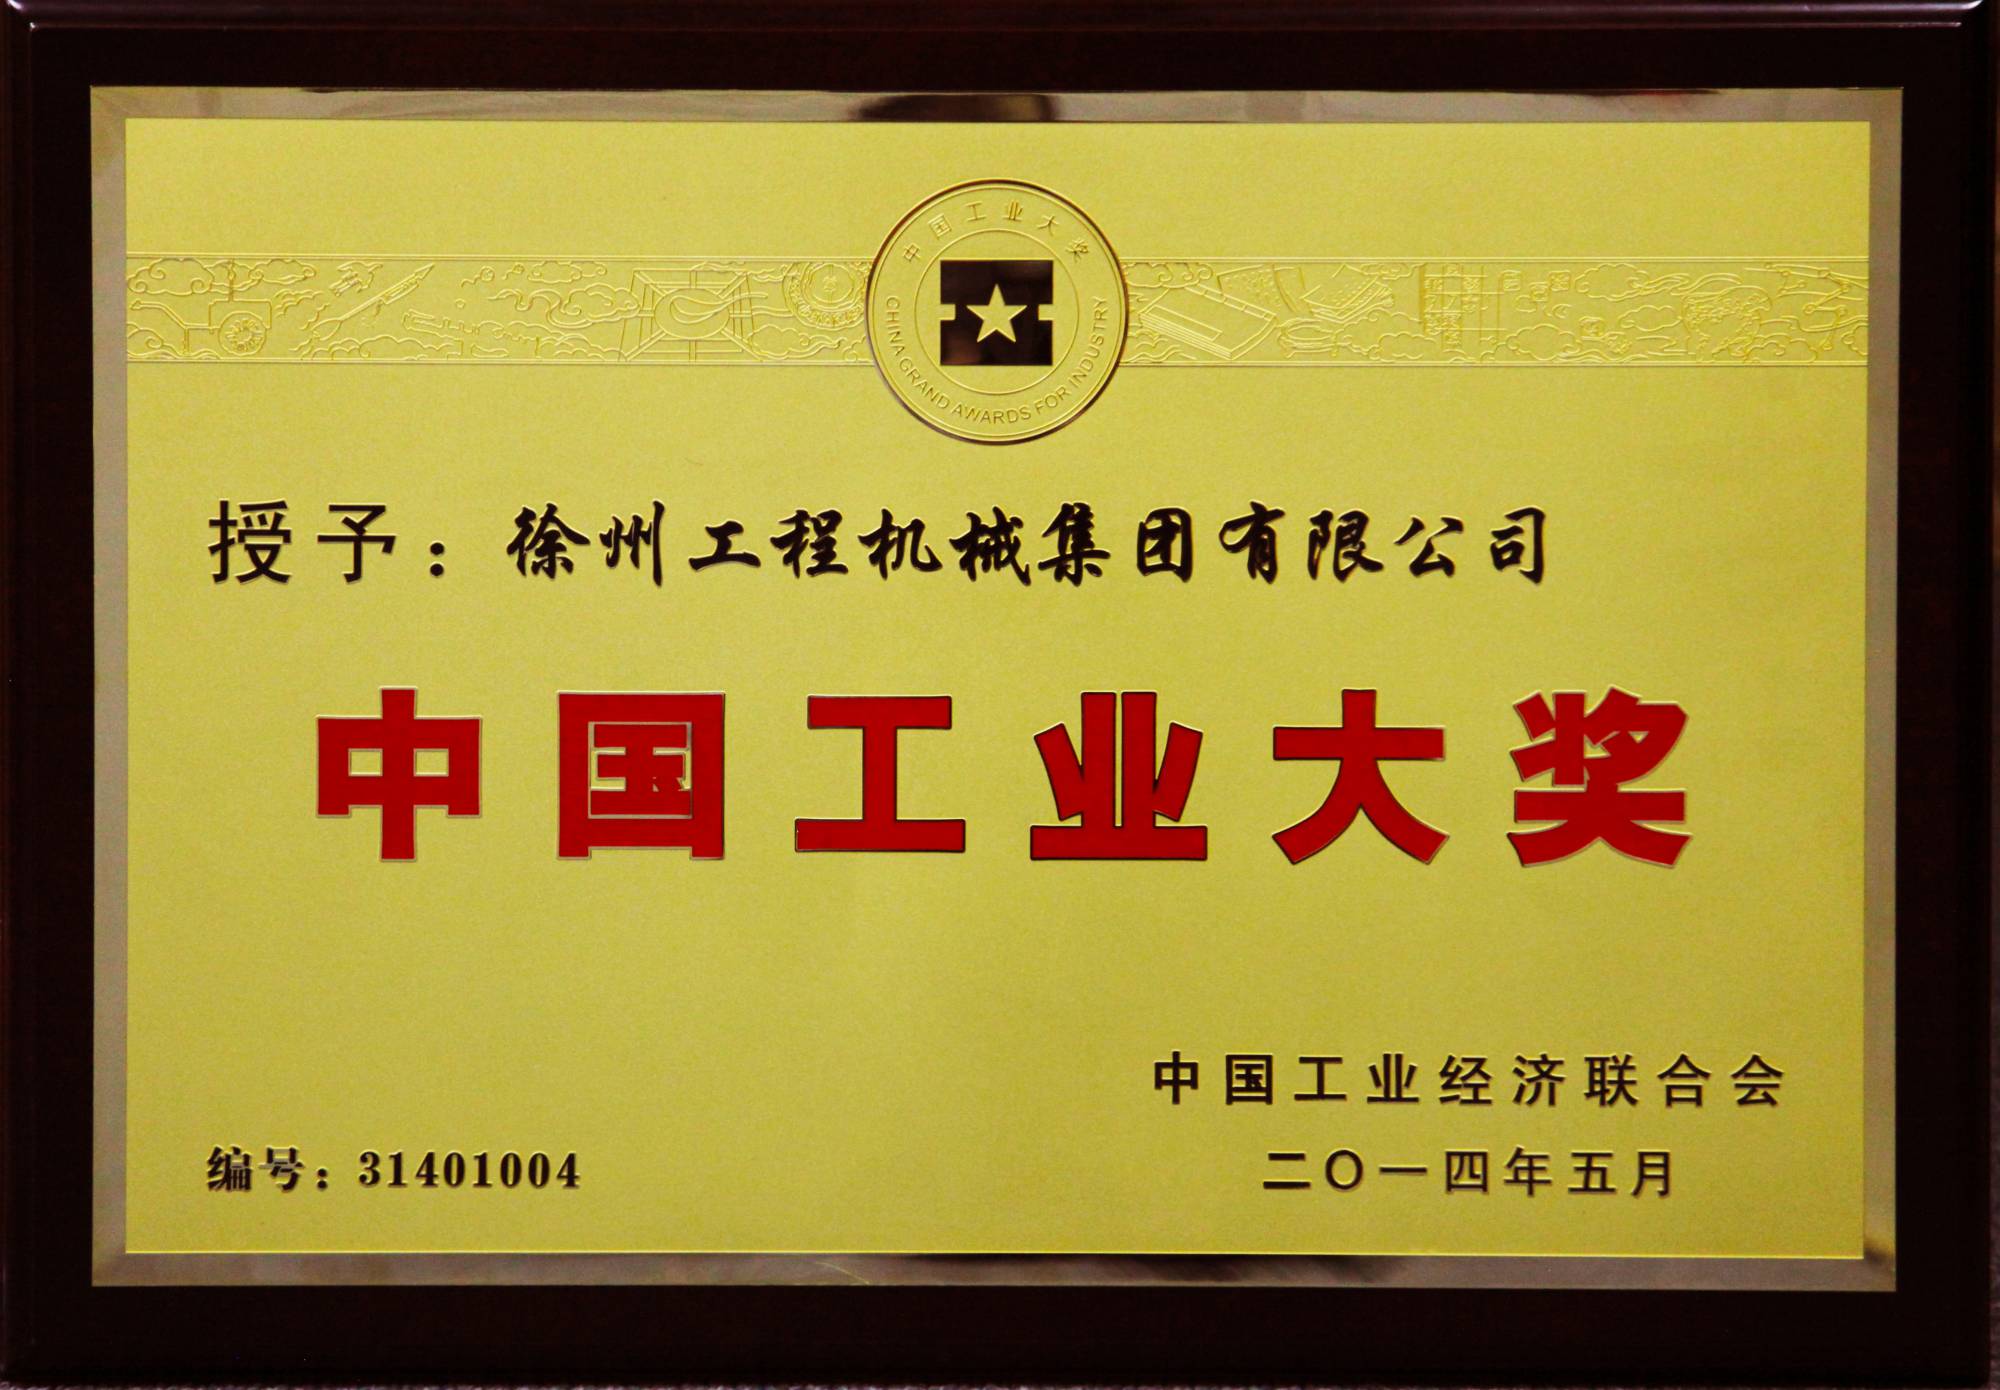 沙巴体育荣膺行业唯一的中国工业领域最高奖项——中国工业大奖